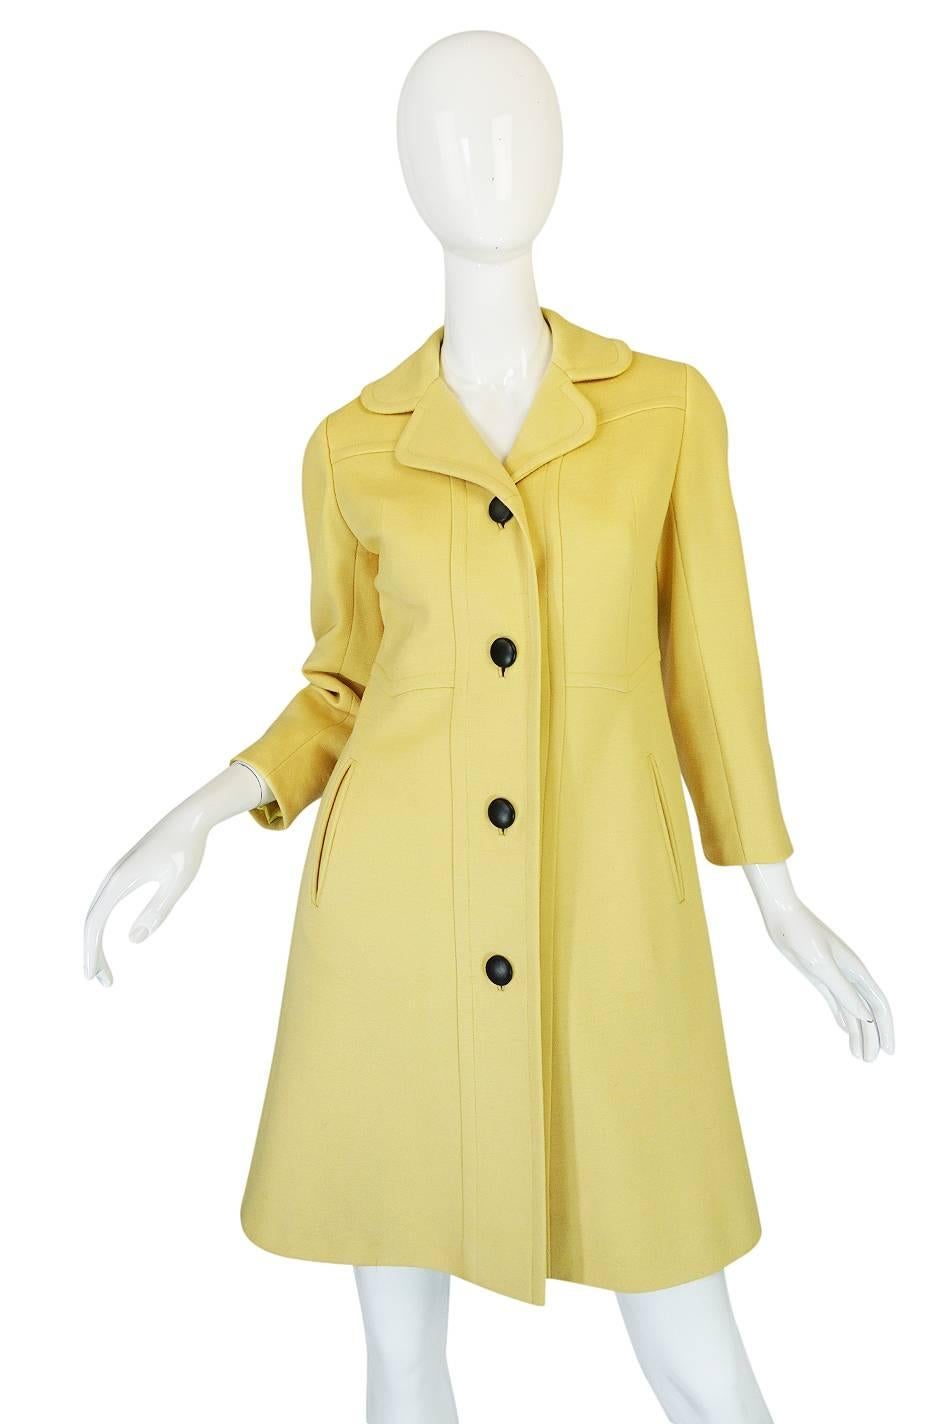 Women's Chic 1970s Pierre Cardin RTW Sleek Little Yellow Coat